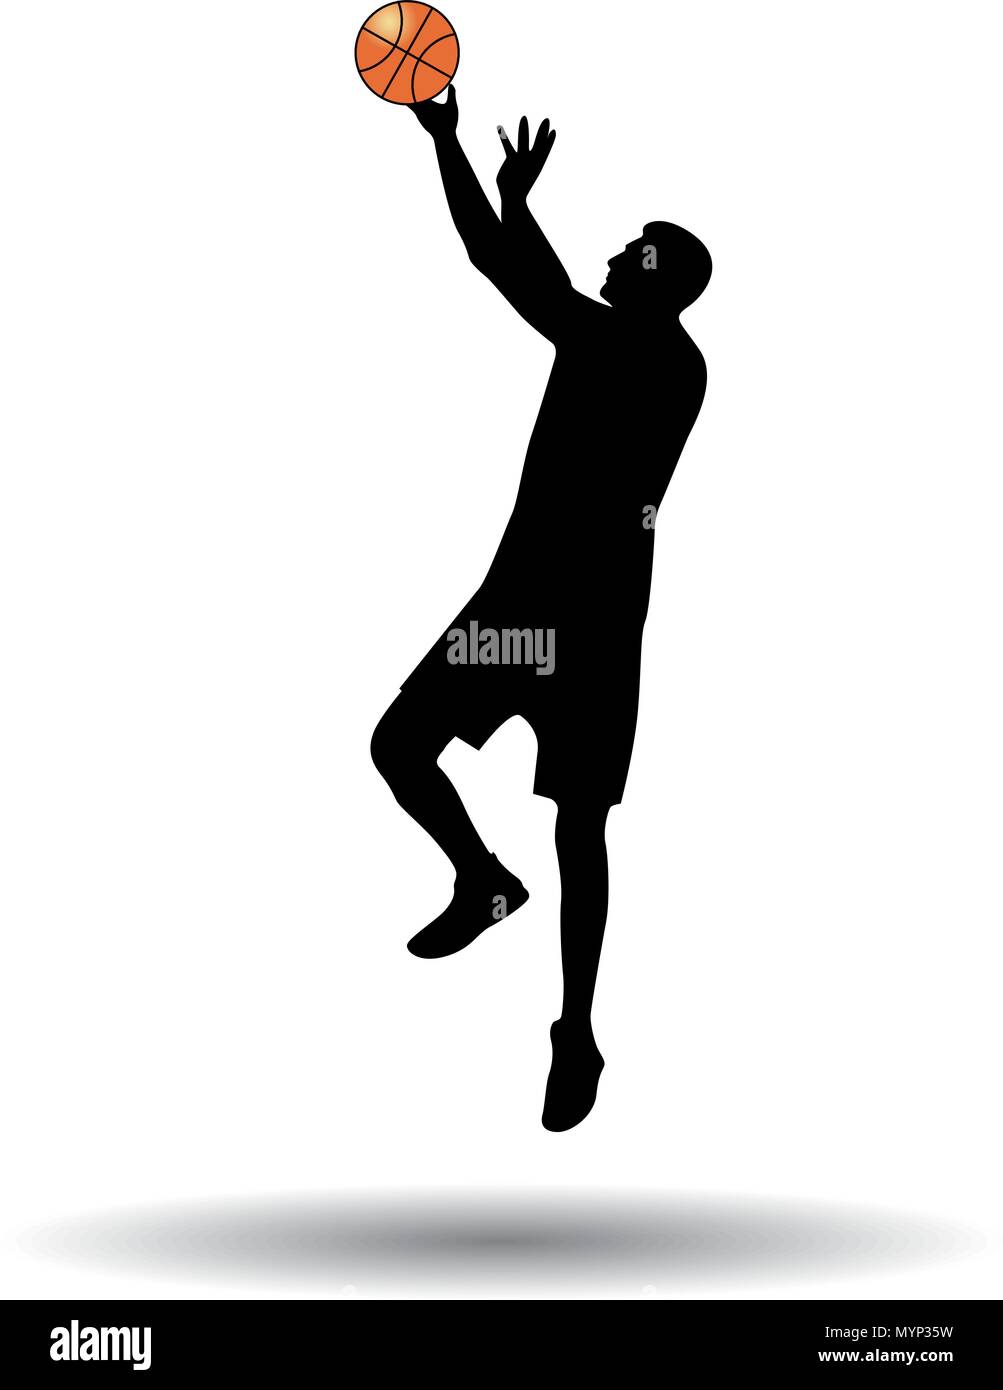 escaldadura no pueden ver experiencia El jugador de baloncesto silueta vectorial Imagen Vector de stock - Alamy